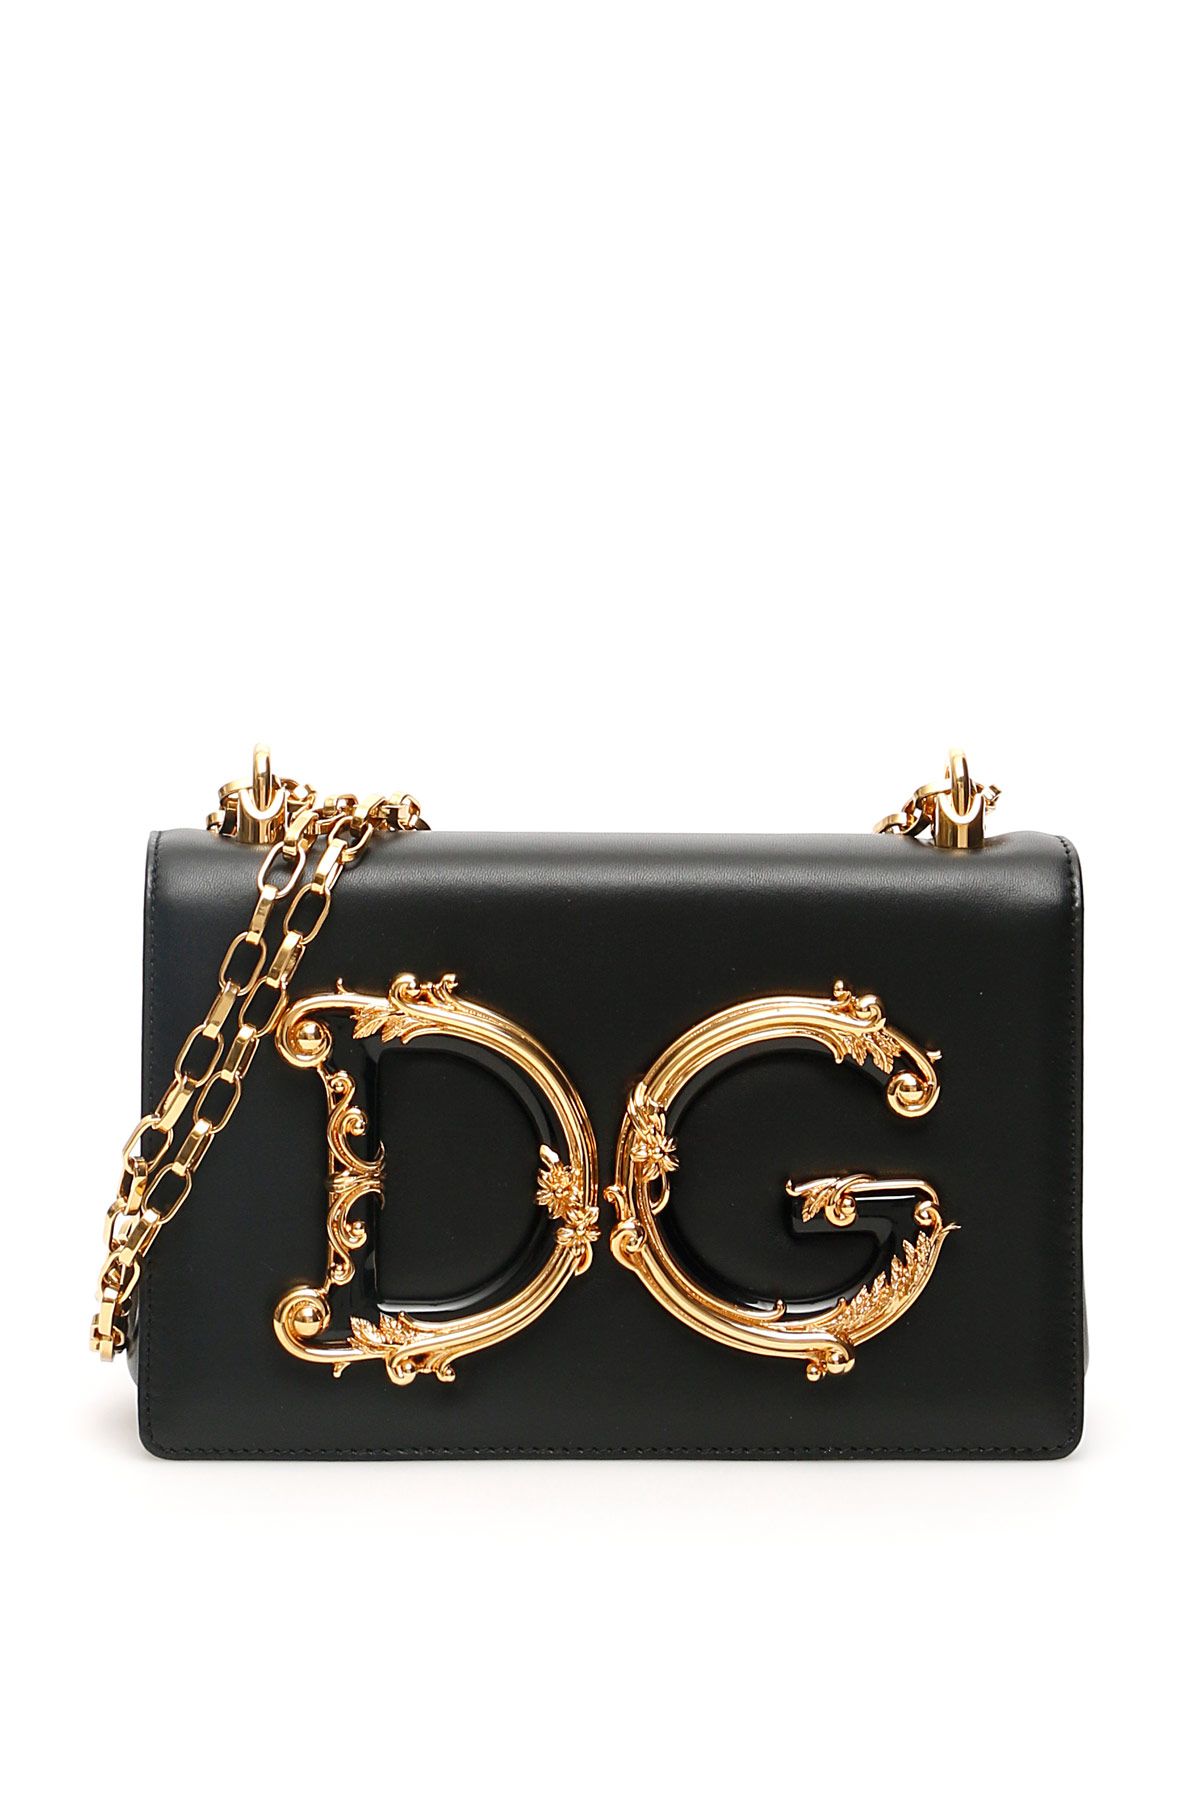 Dolce & Gabbana DOLCE & GABBANA nappa leather dg girls bag